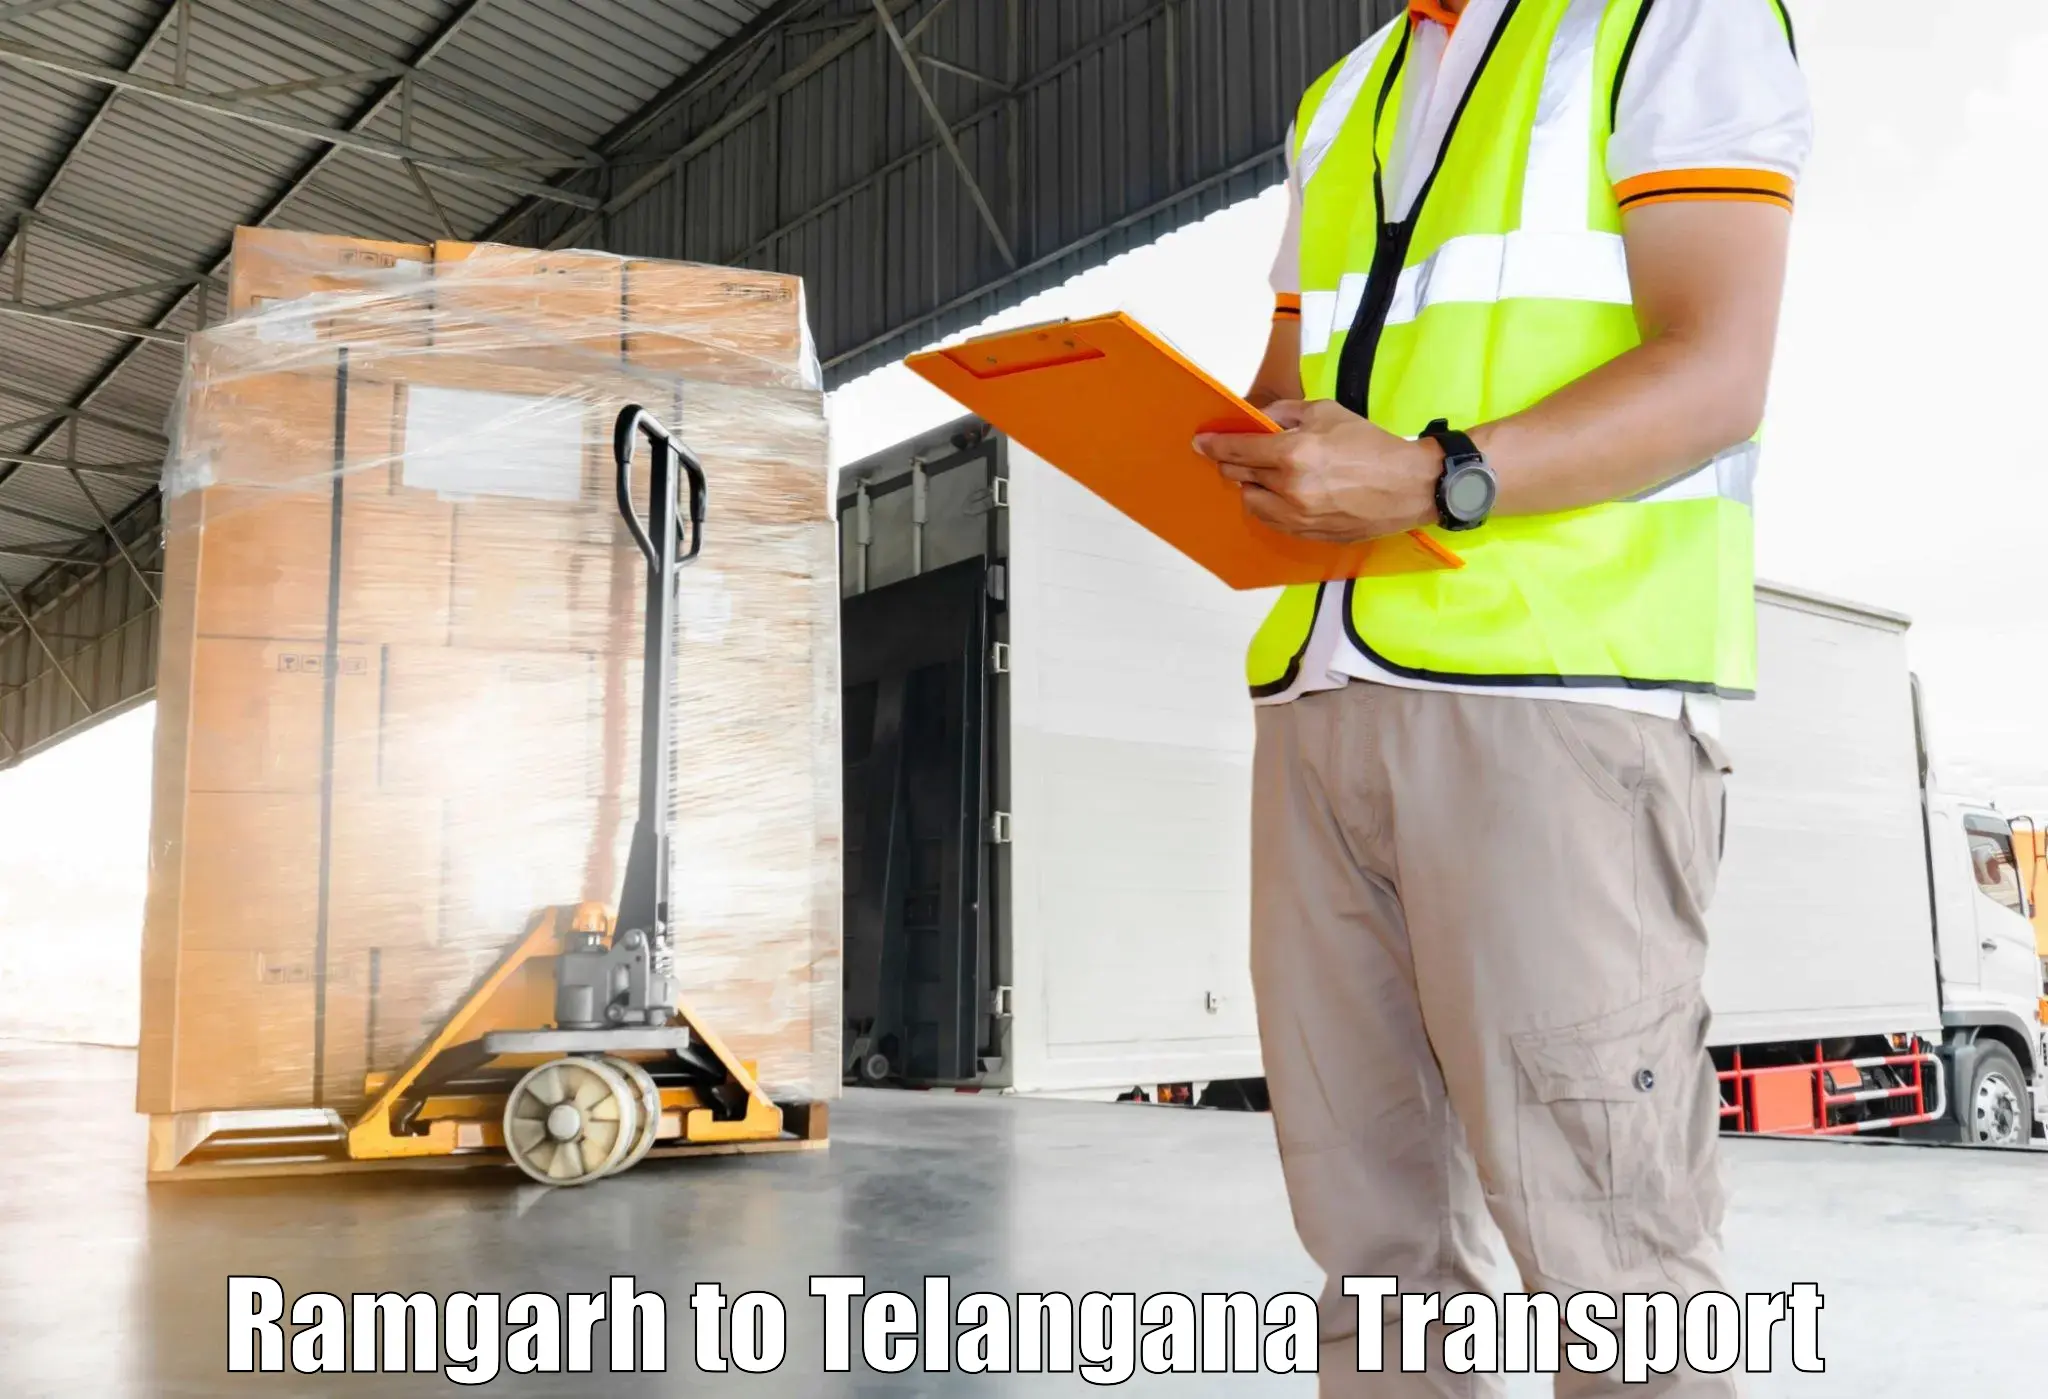 Interstate transport services Ramgarh to Vikarabad